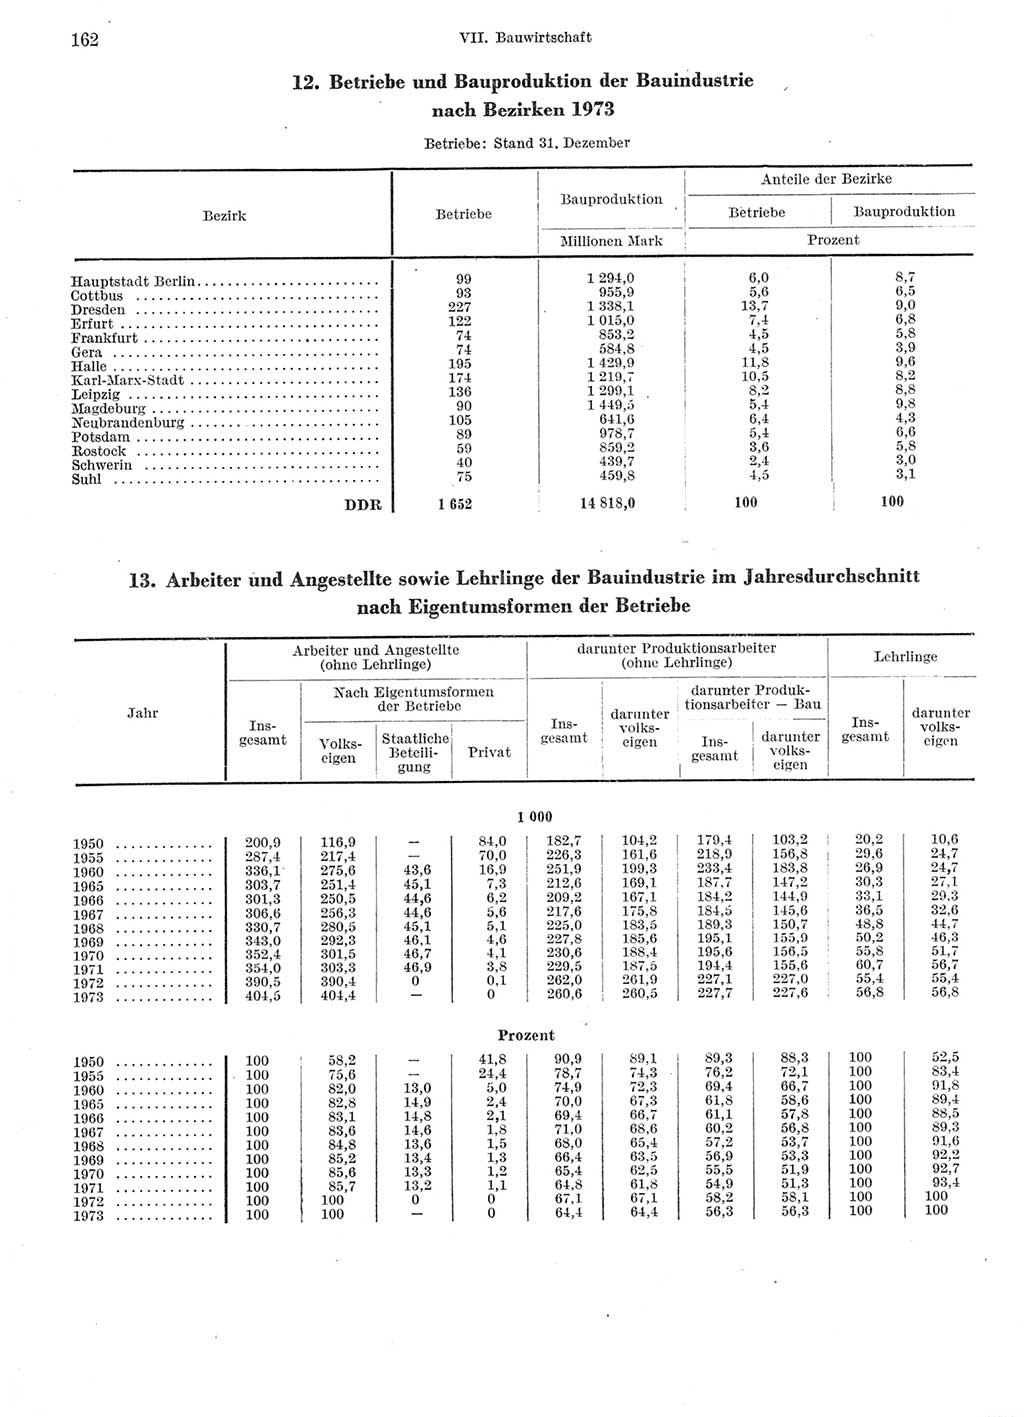 Statistisches Jahrbuch der Deutschen Demokratischen Republik (DDR) 1974, Seite 162 (Stat. Jb. DDR 1974, S. 162)